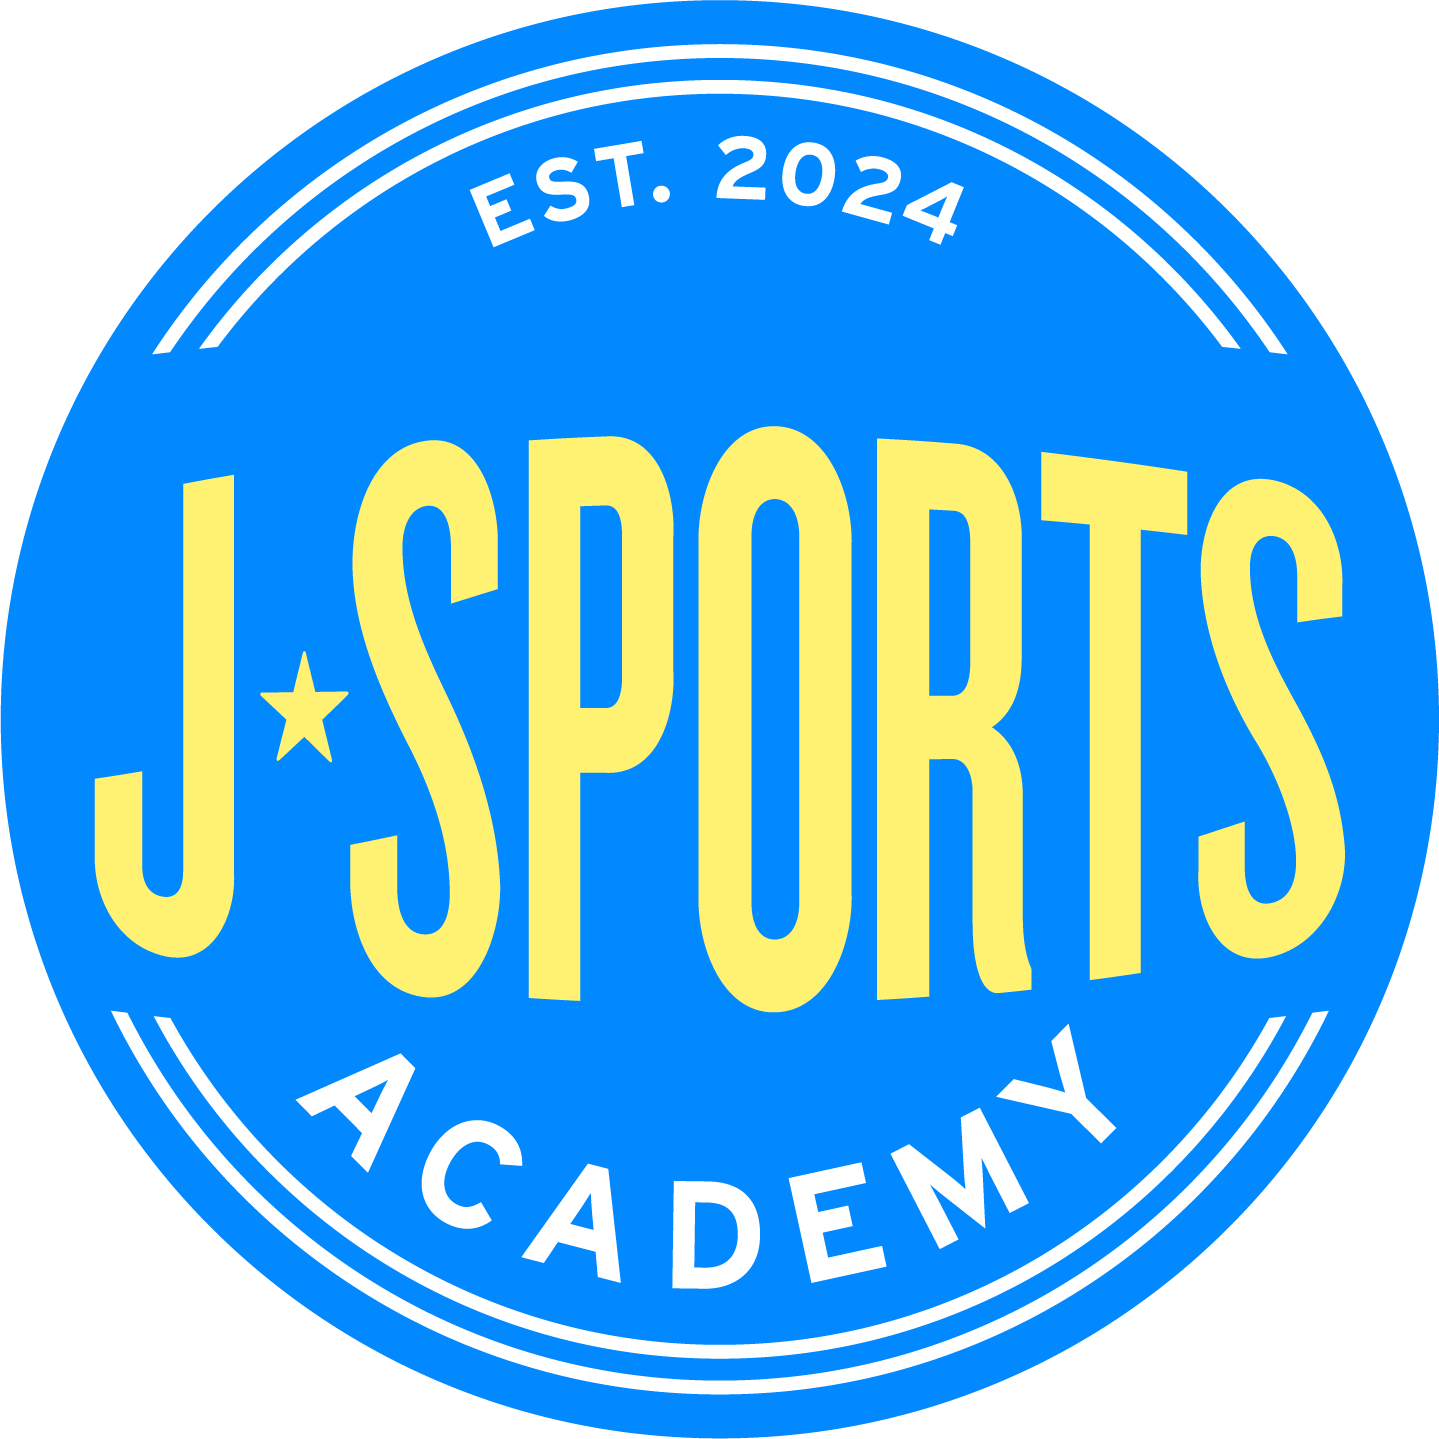 JSports Academy